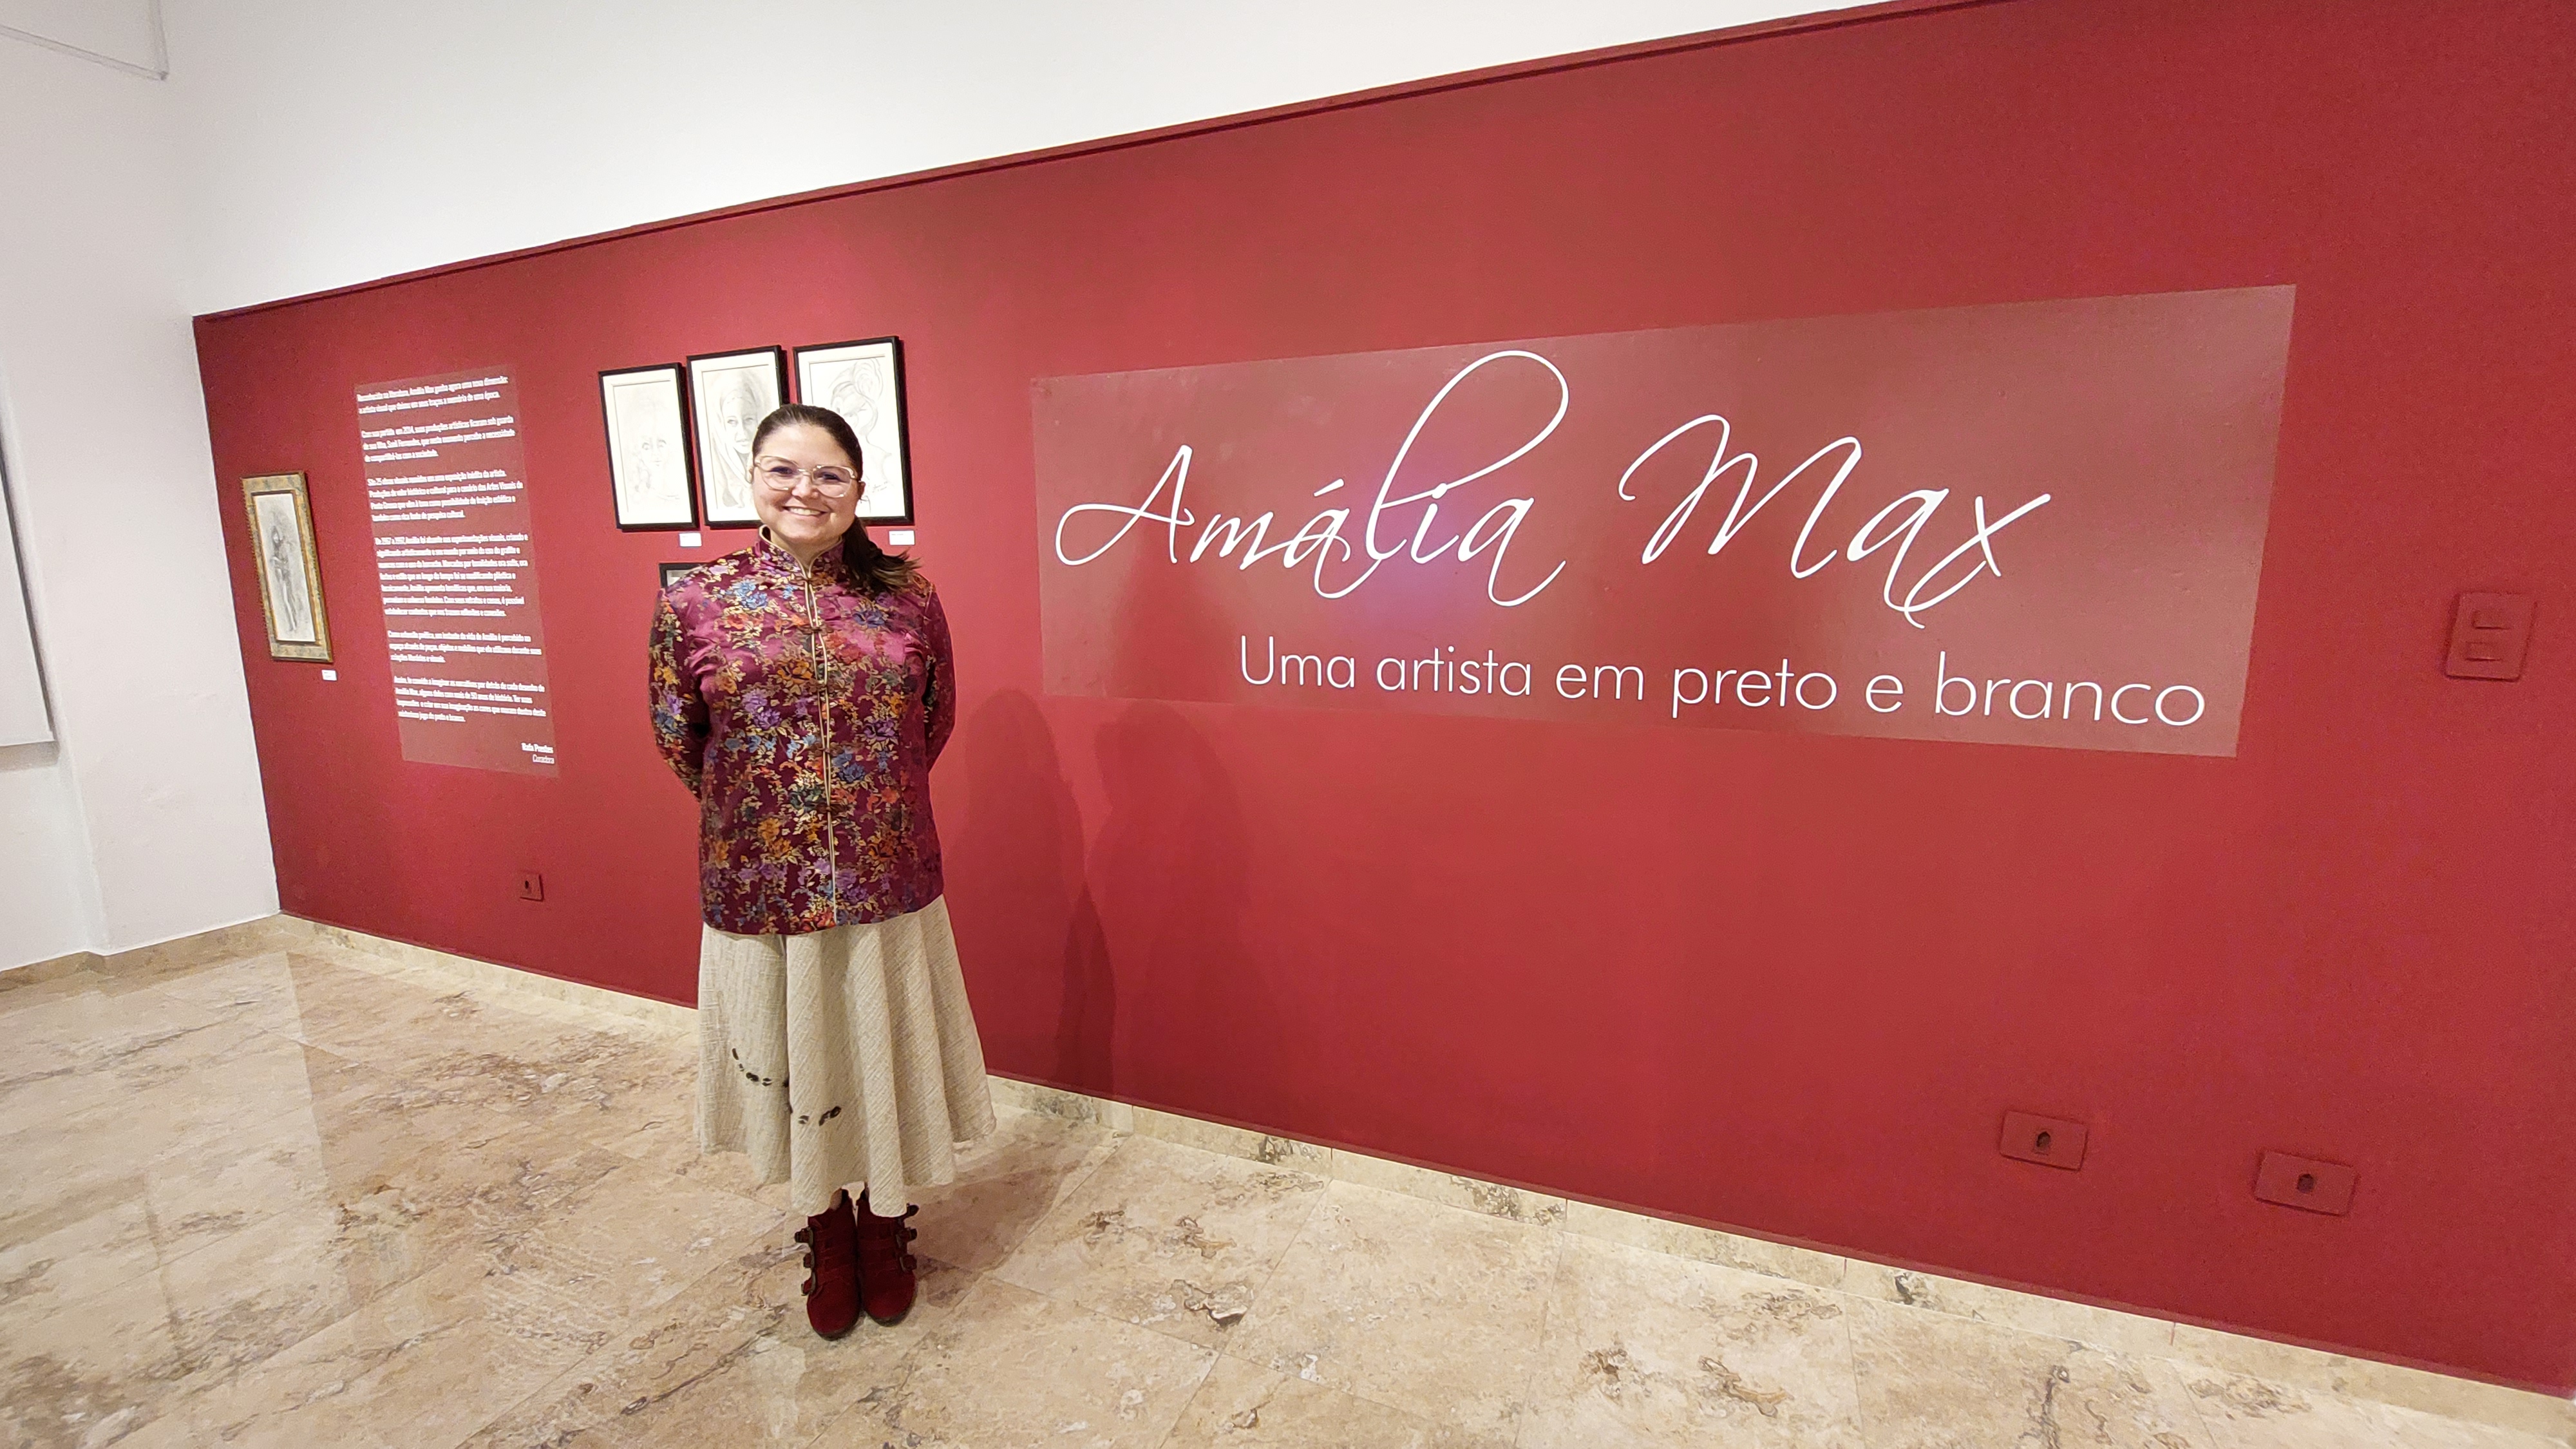 São produções de valor histórico e cultural para o cenário das Artes Visuais de Ponta Grossa